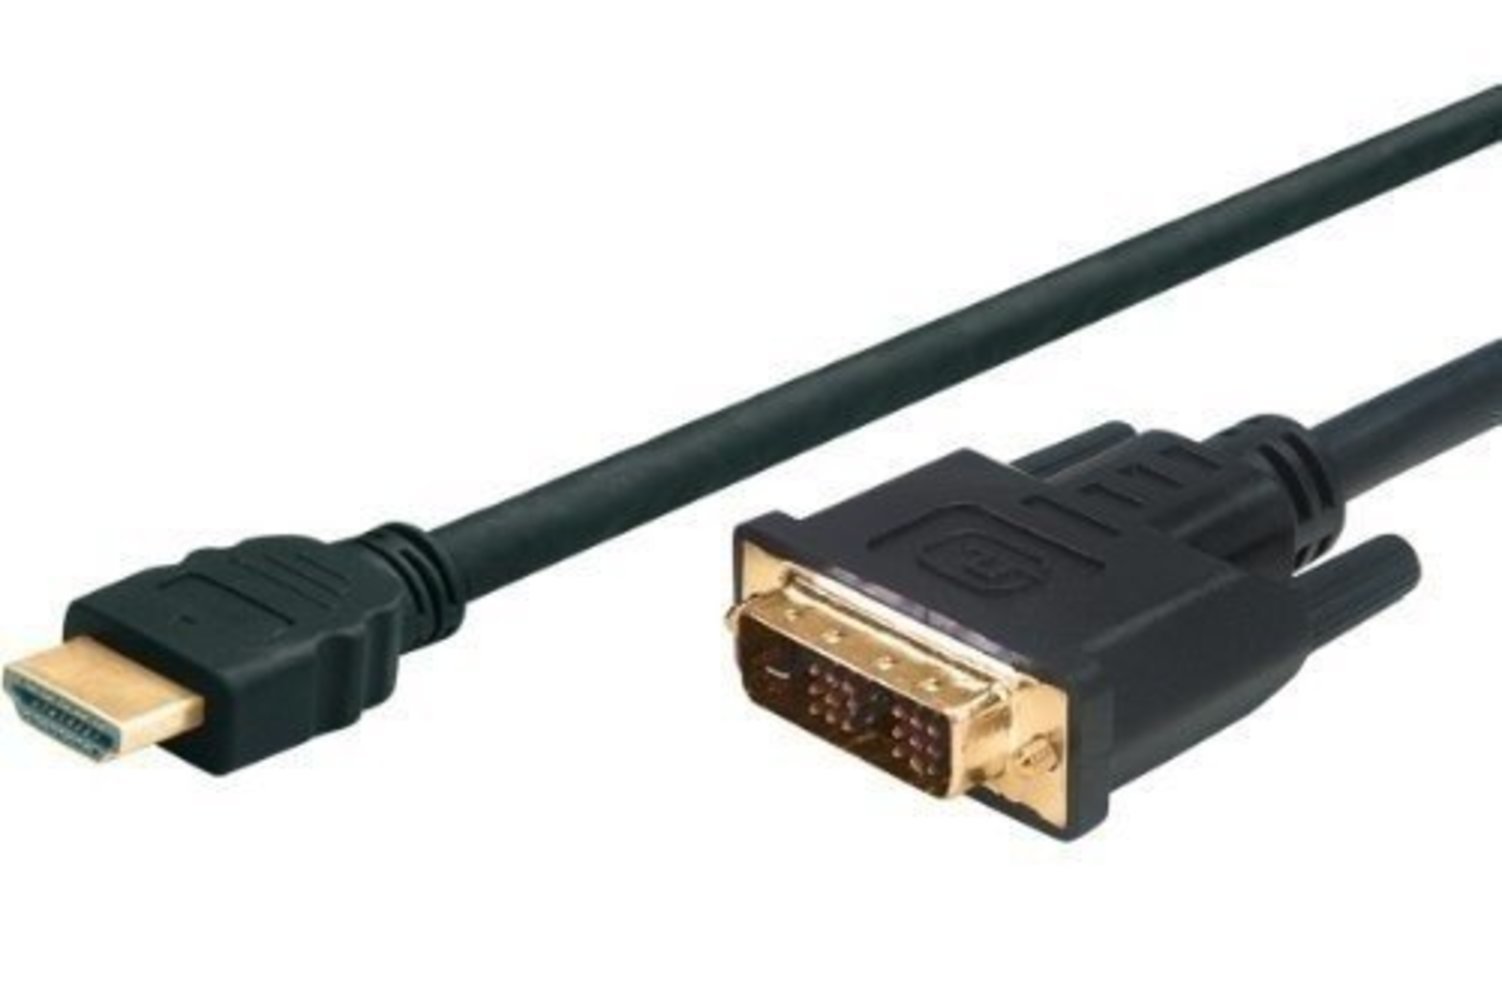 JOUJYE HDMI/DVI-D Adapterkabel 2m - HDMI Stecker A / DVI-D Stecker 18+1 - Vergoldet - Hochdichte 3-fach Abschirmung - HDCP Konform